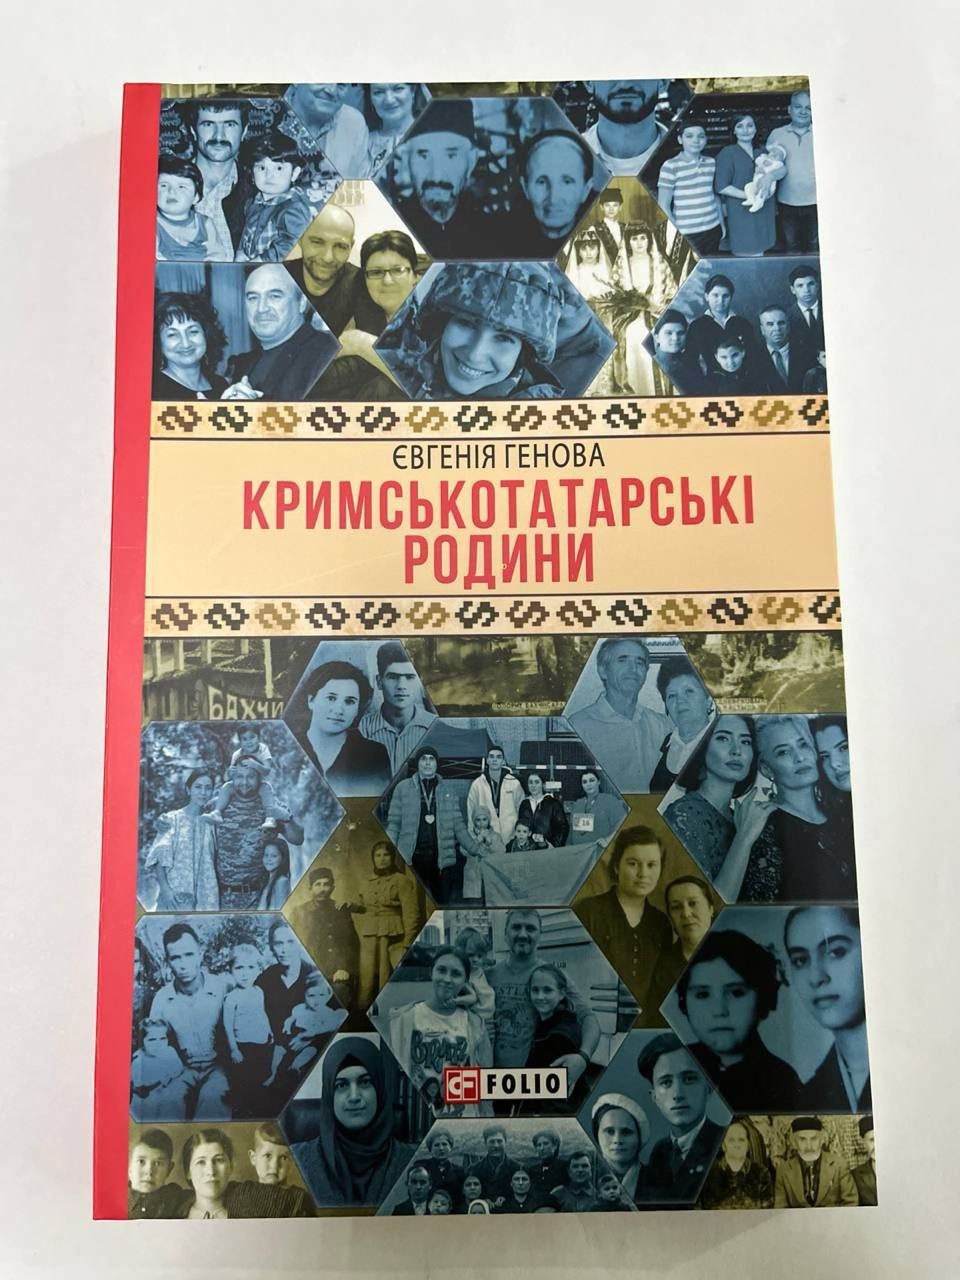 Євгенія Генова: Історія 14 кримськотатарських родин у моїй першій книжці - зображення